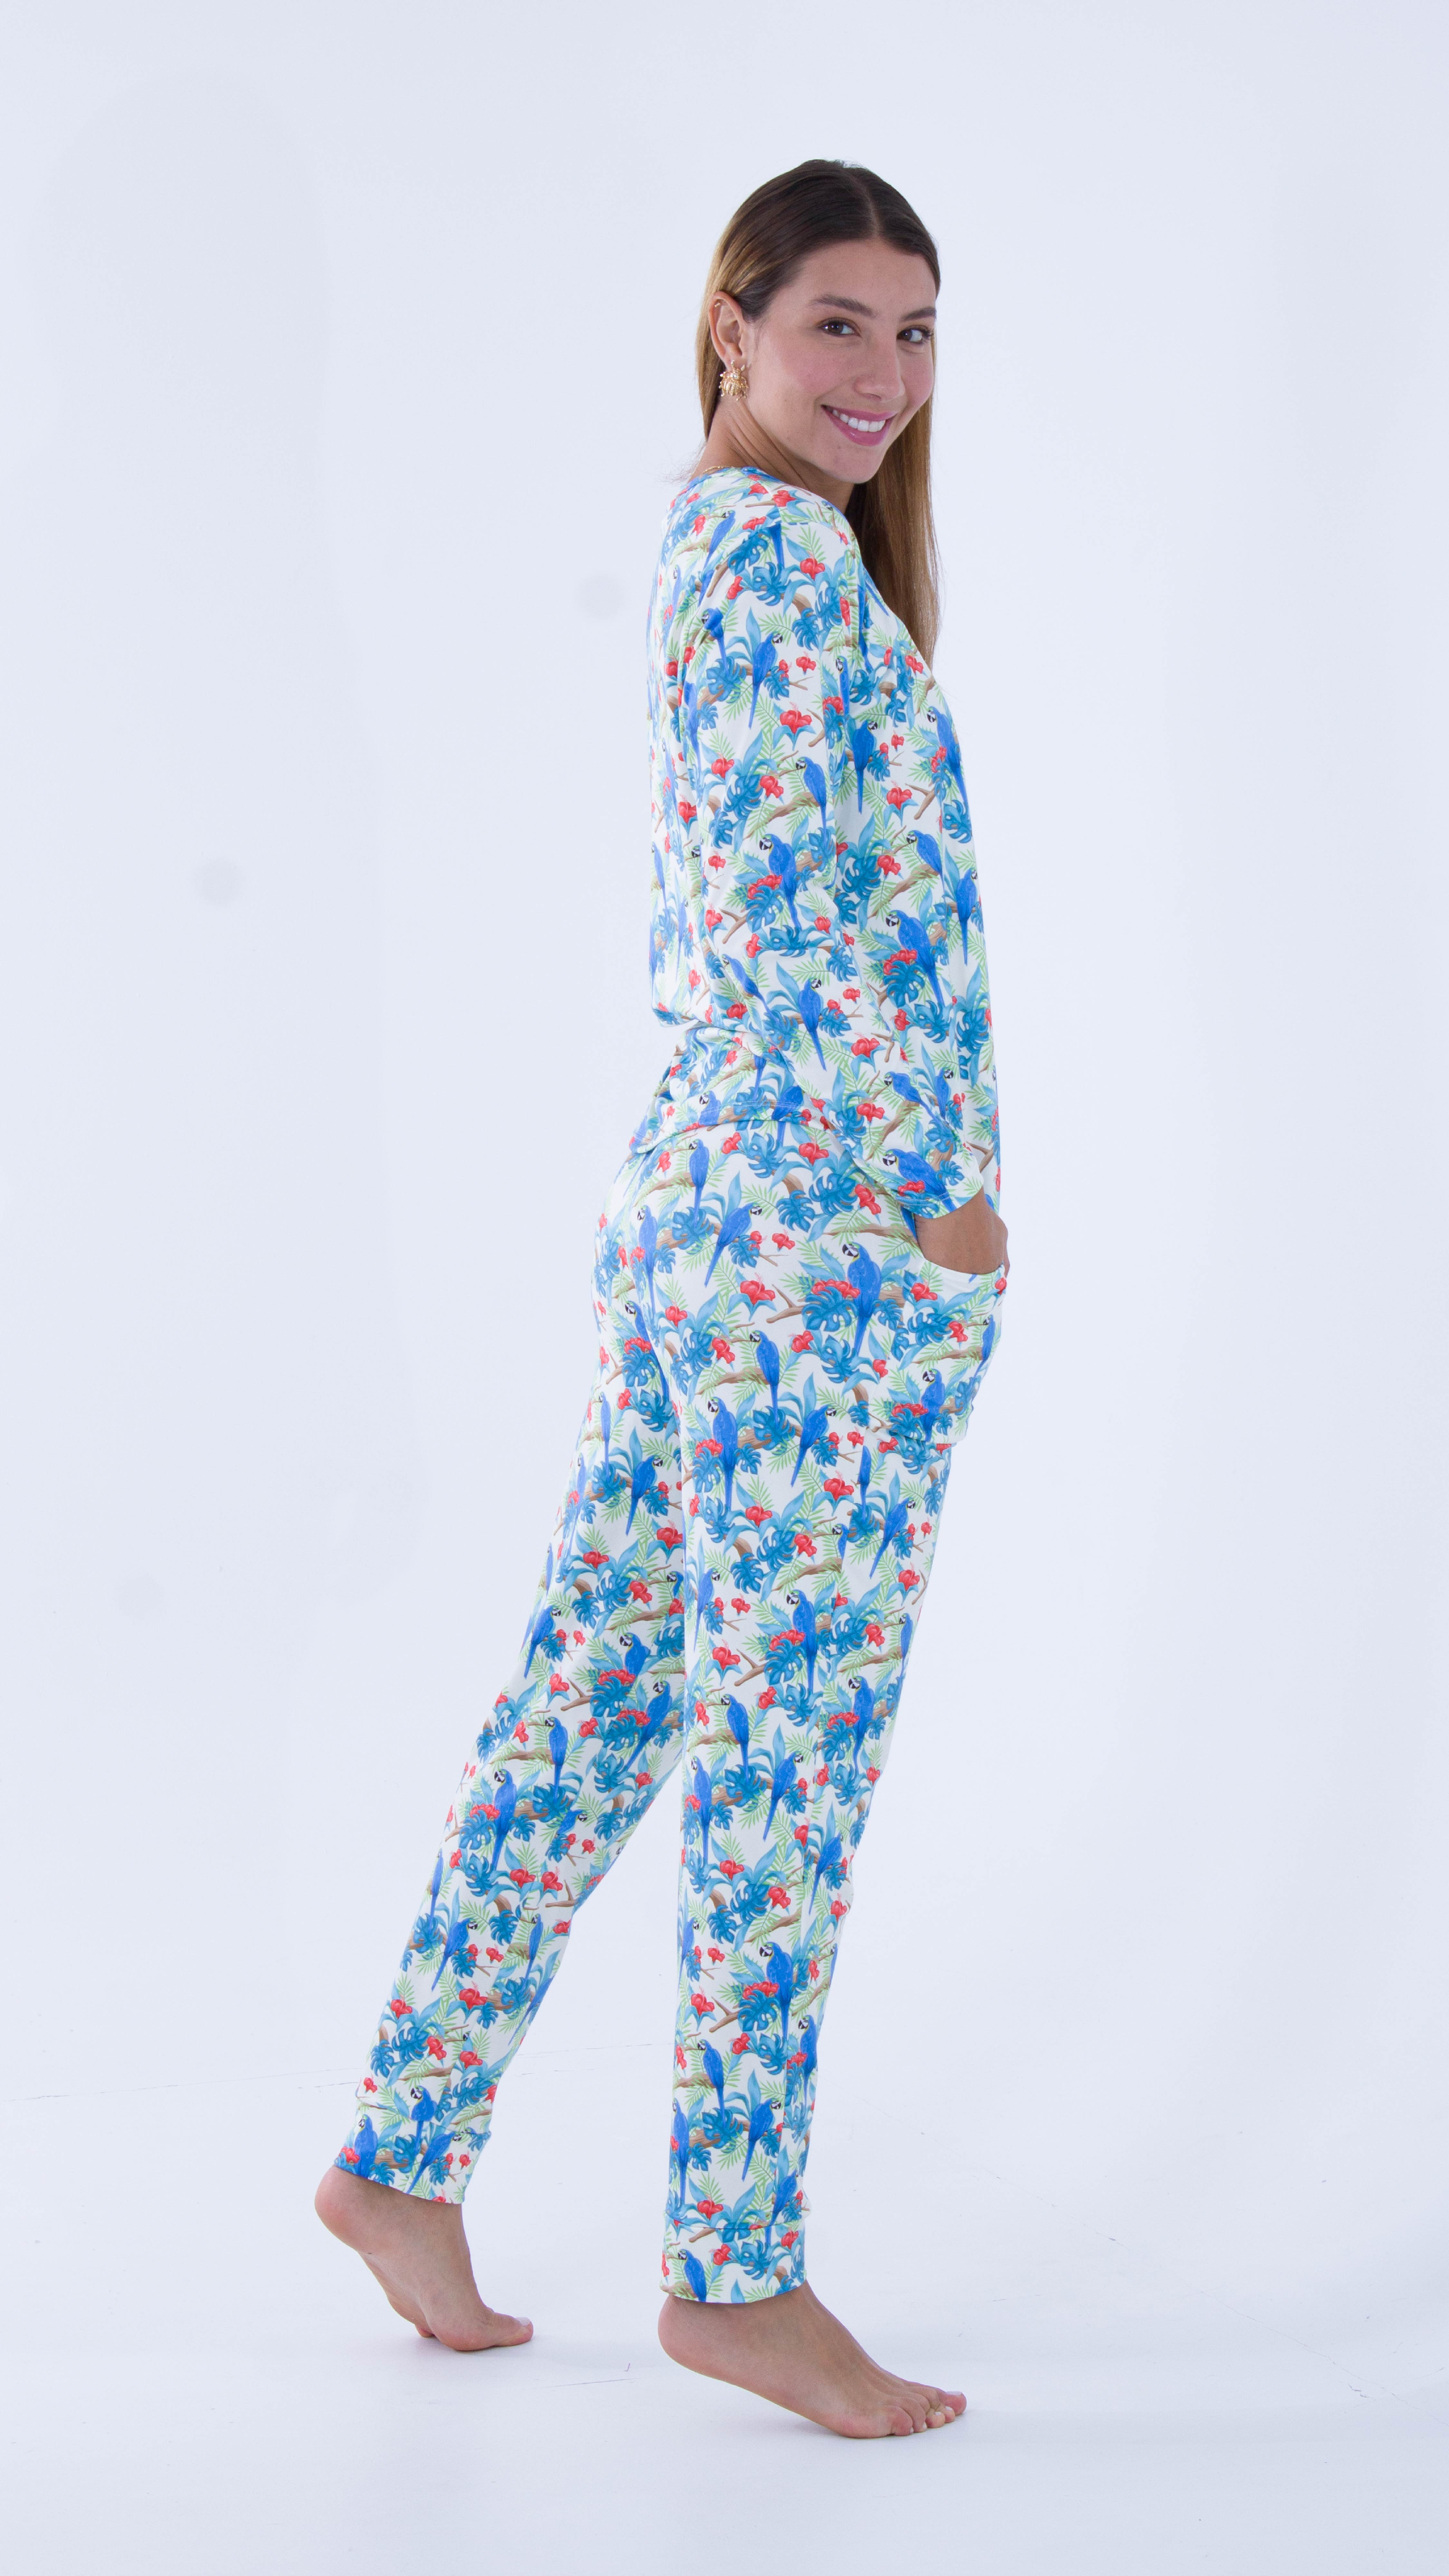 Imagen Pijama en piel de durazno, estampado loros 2